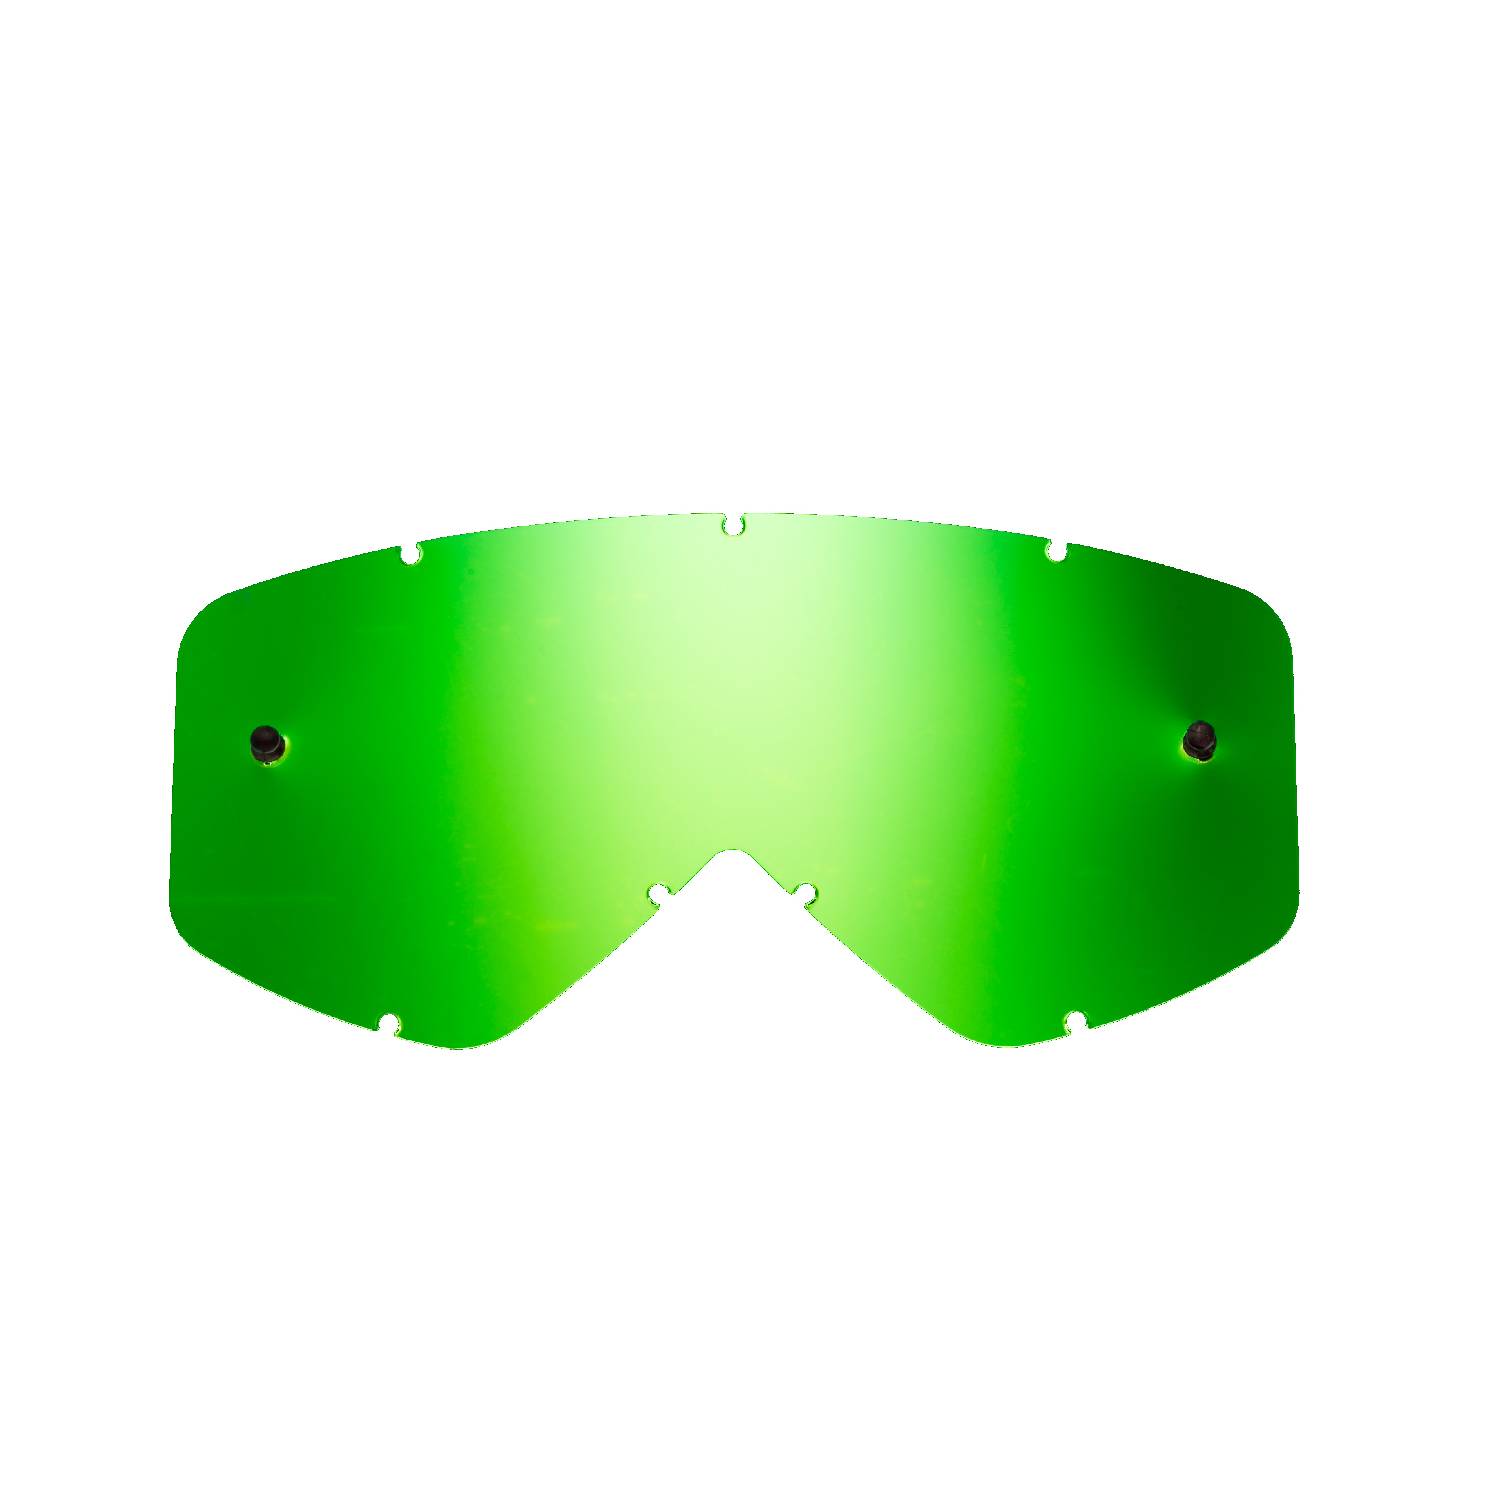 Lente di ricambio verde specchiato compatibile per occhiale/maschera Smith Fuel / Intake / V1 / V2